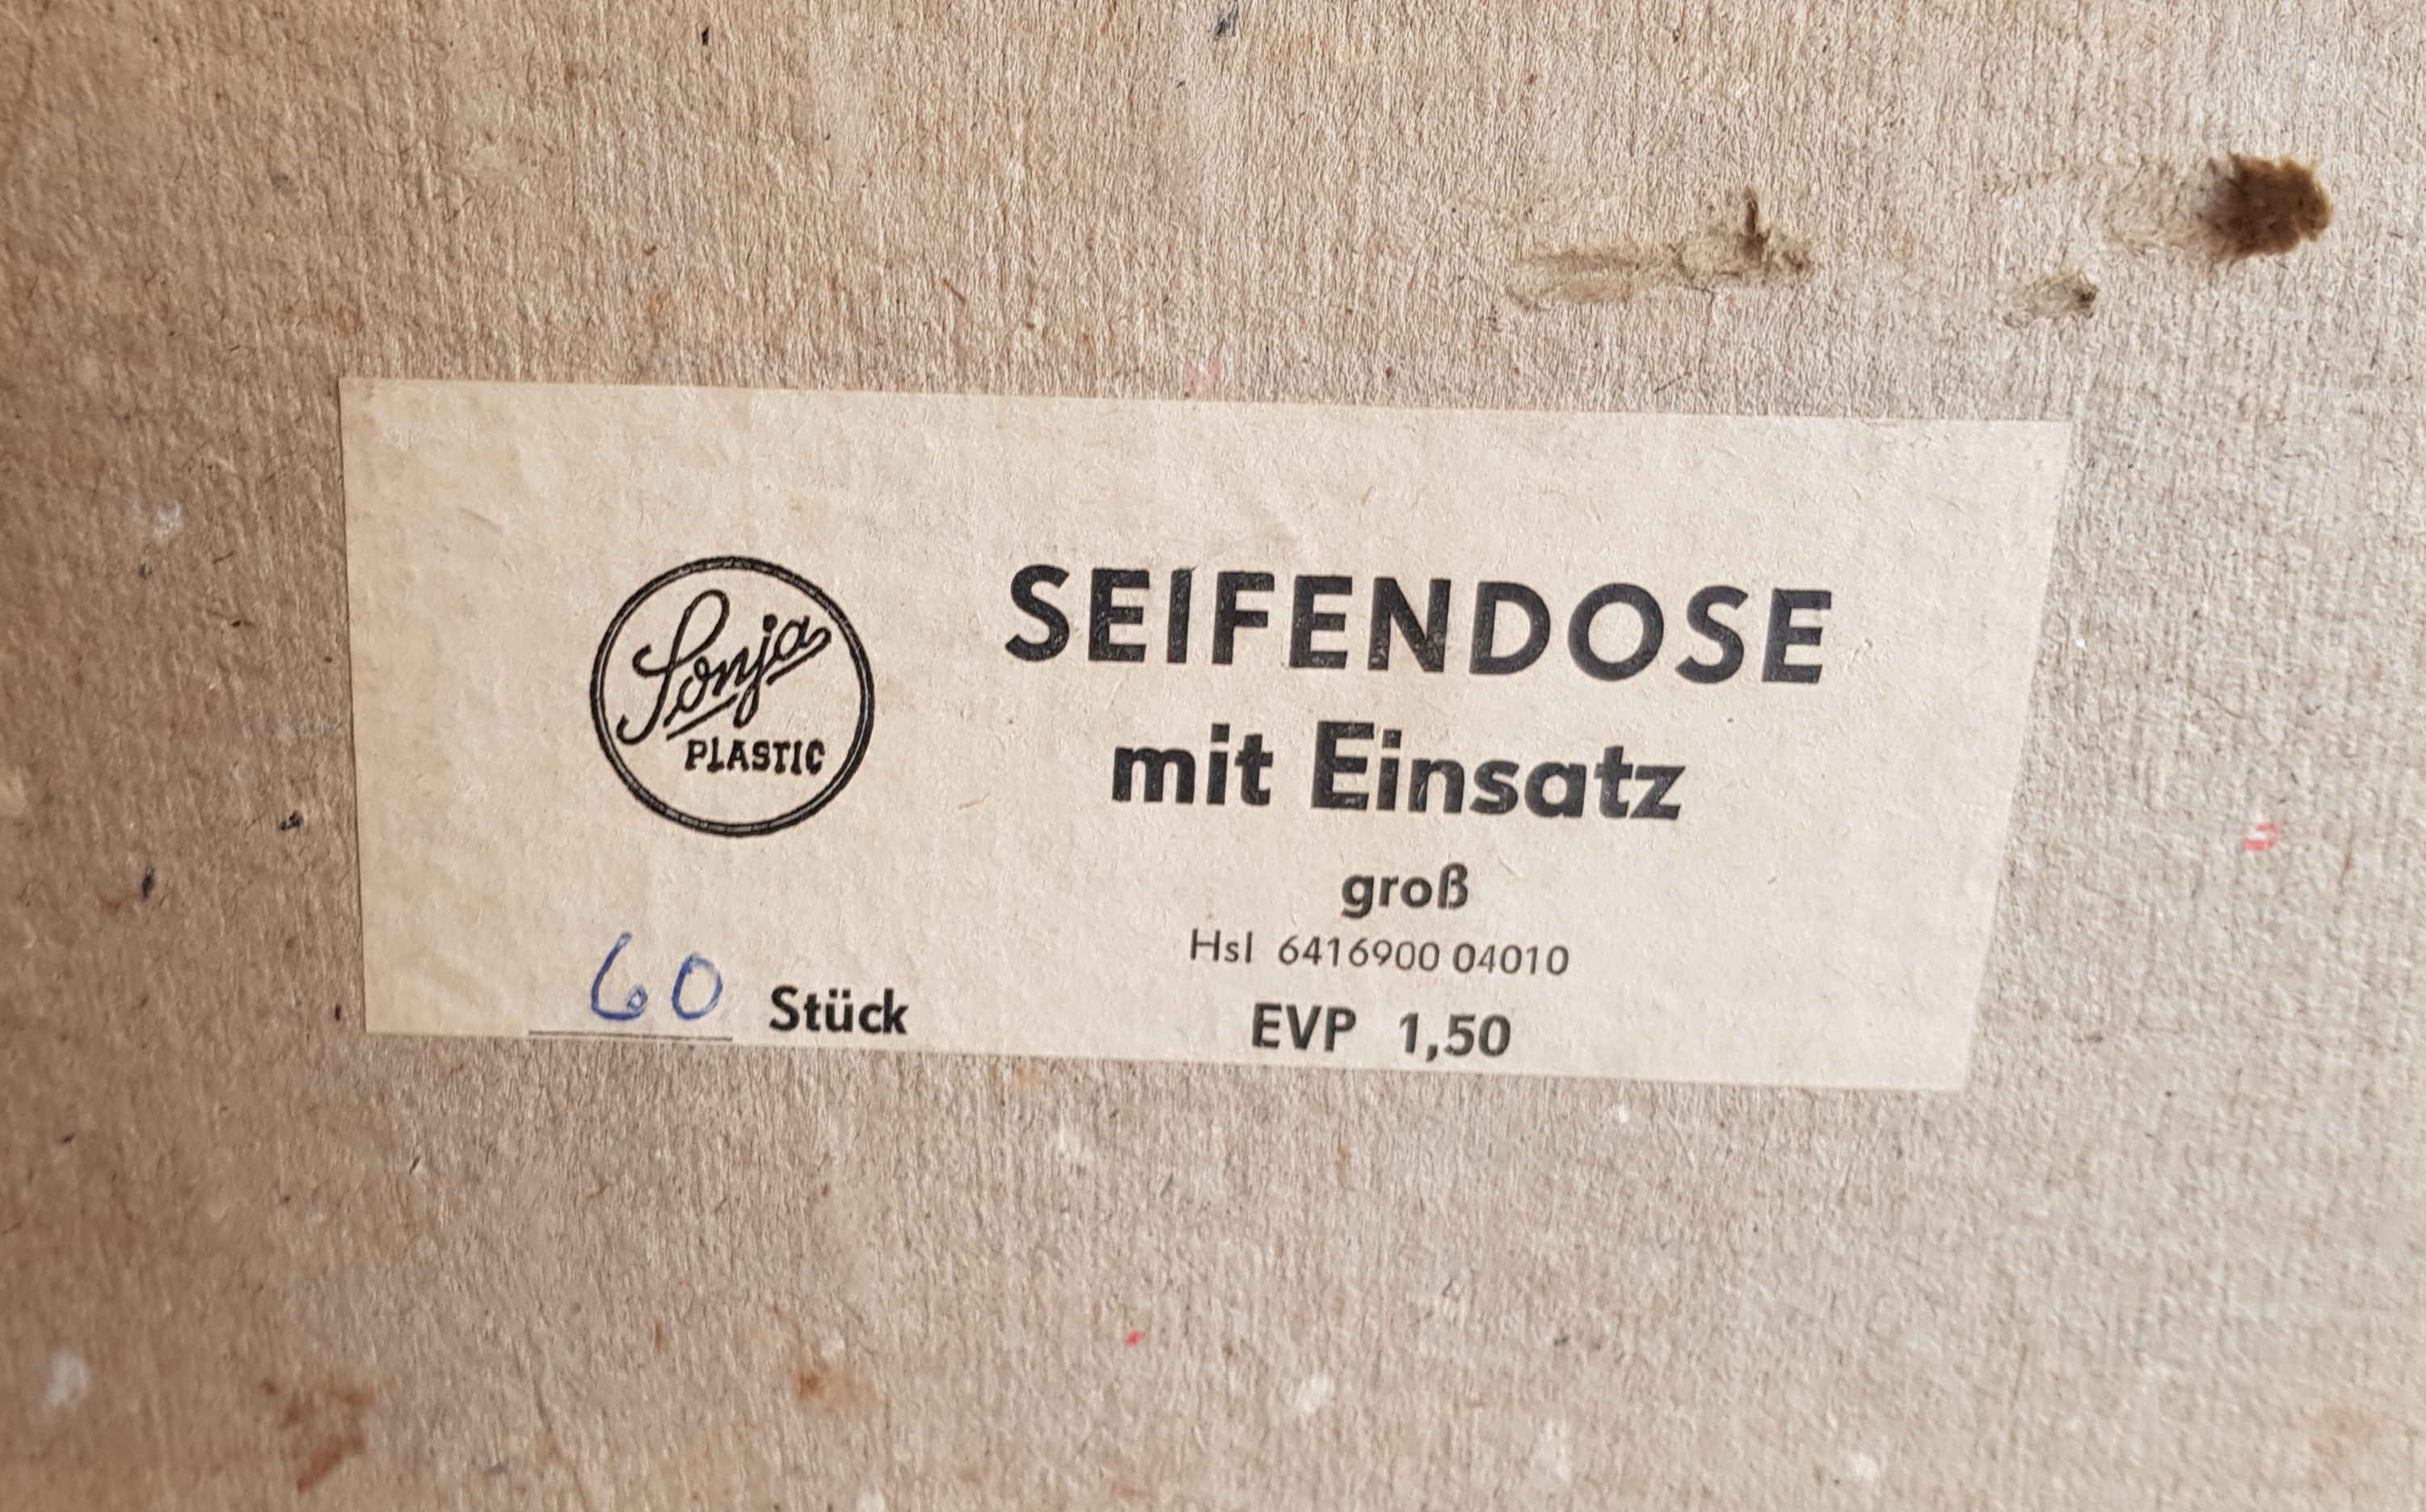 60 Stück Original DDR Seifendosen braun mit Einsatz